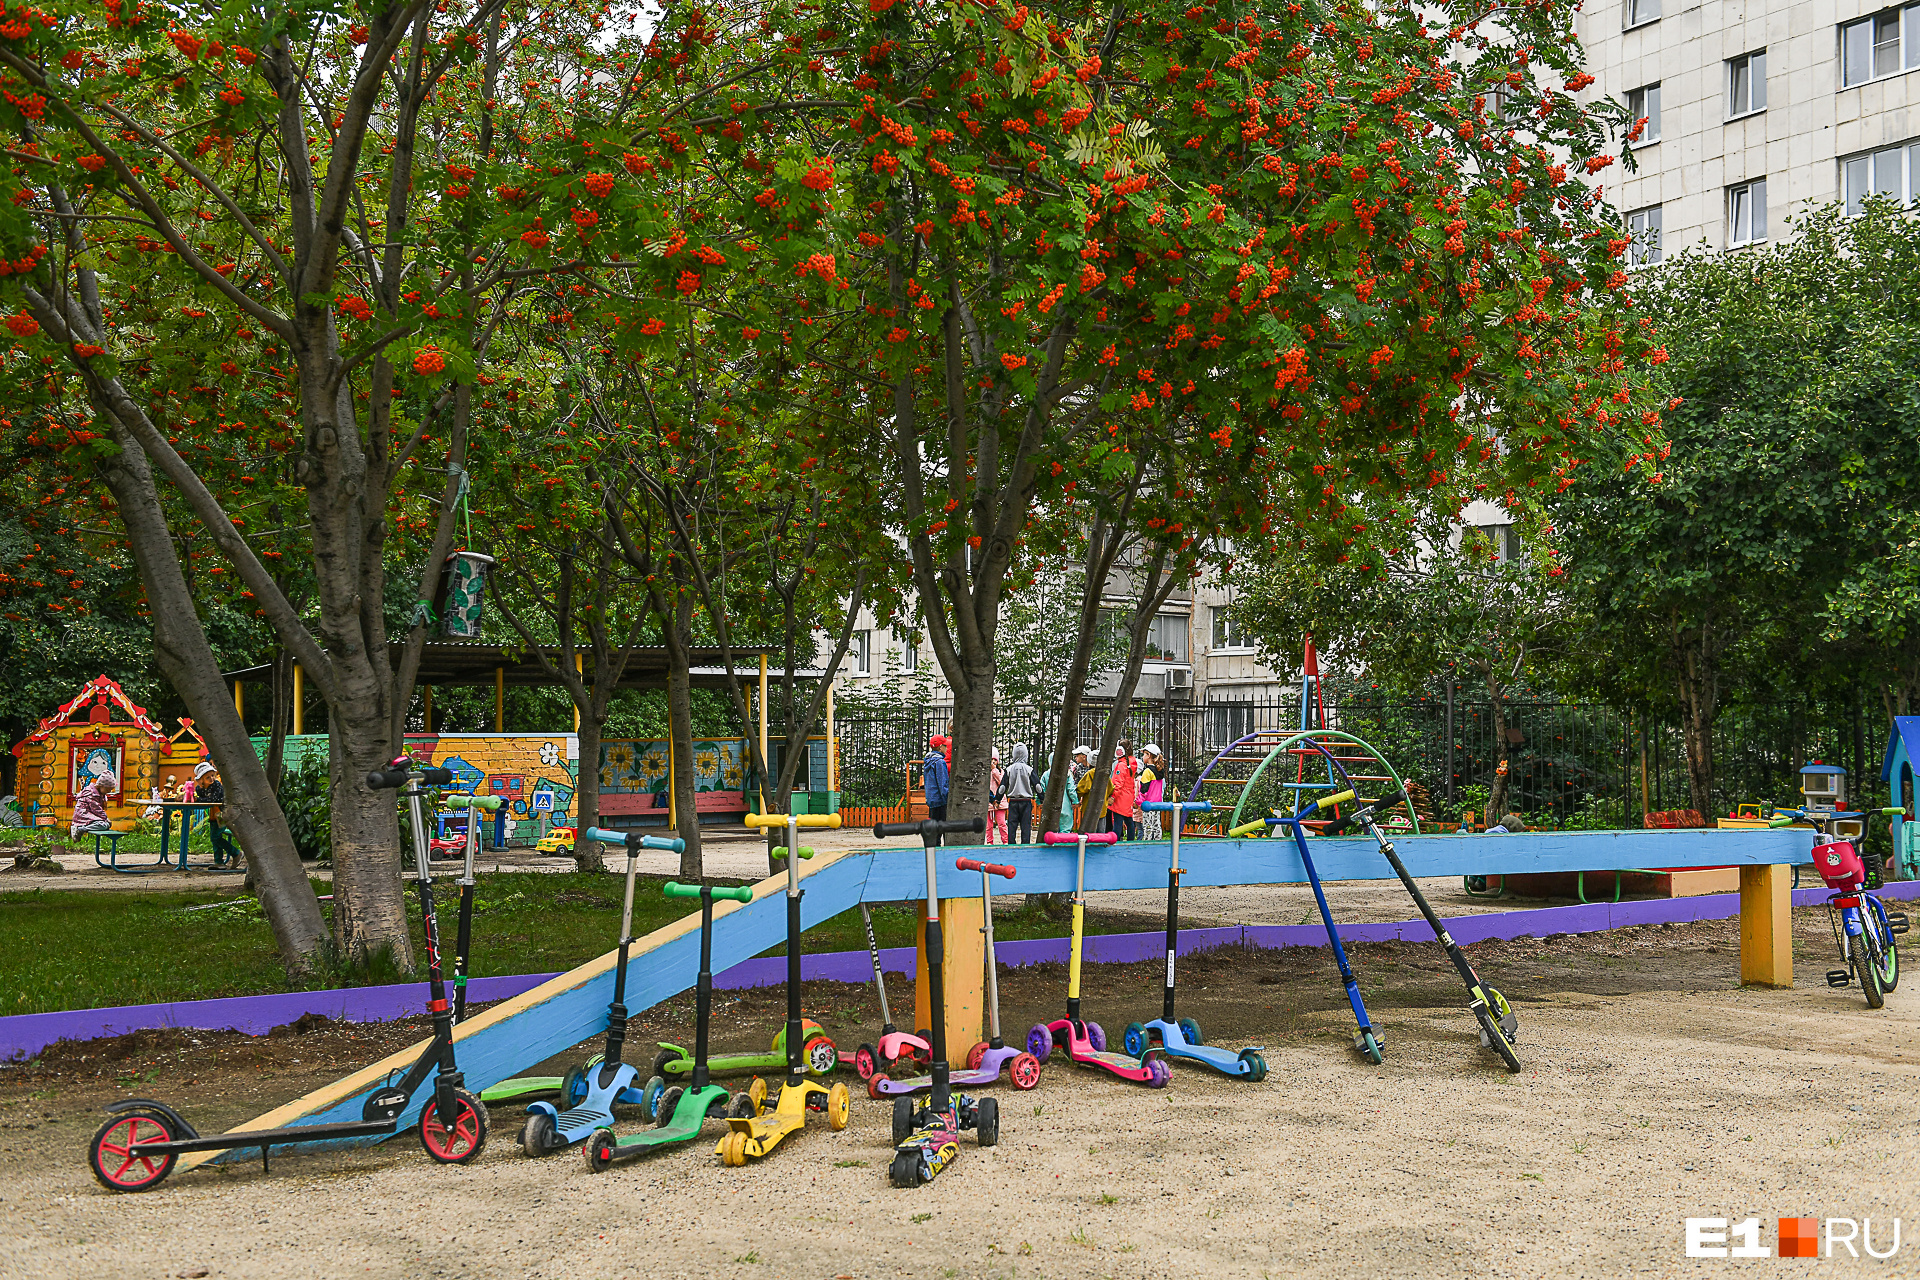 В Екатеринбурге усилили меры охраны в детских садах, но родителей это возмутило. В чём проблема?